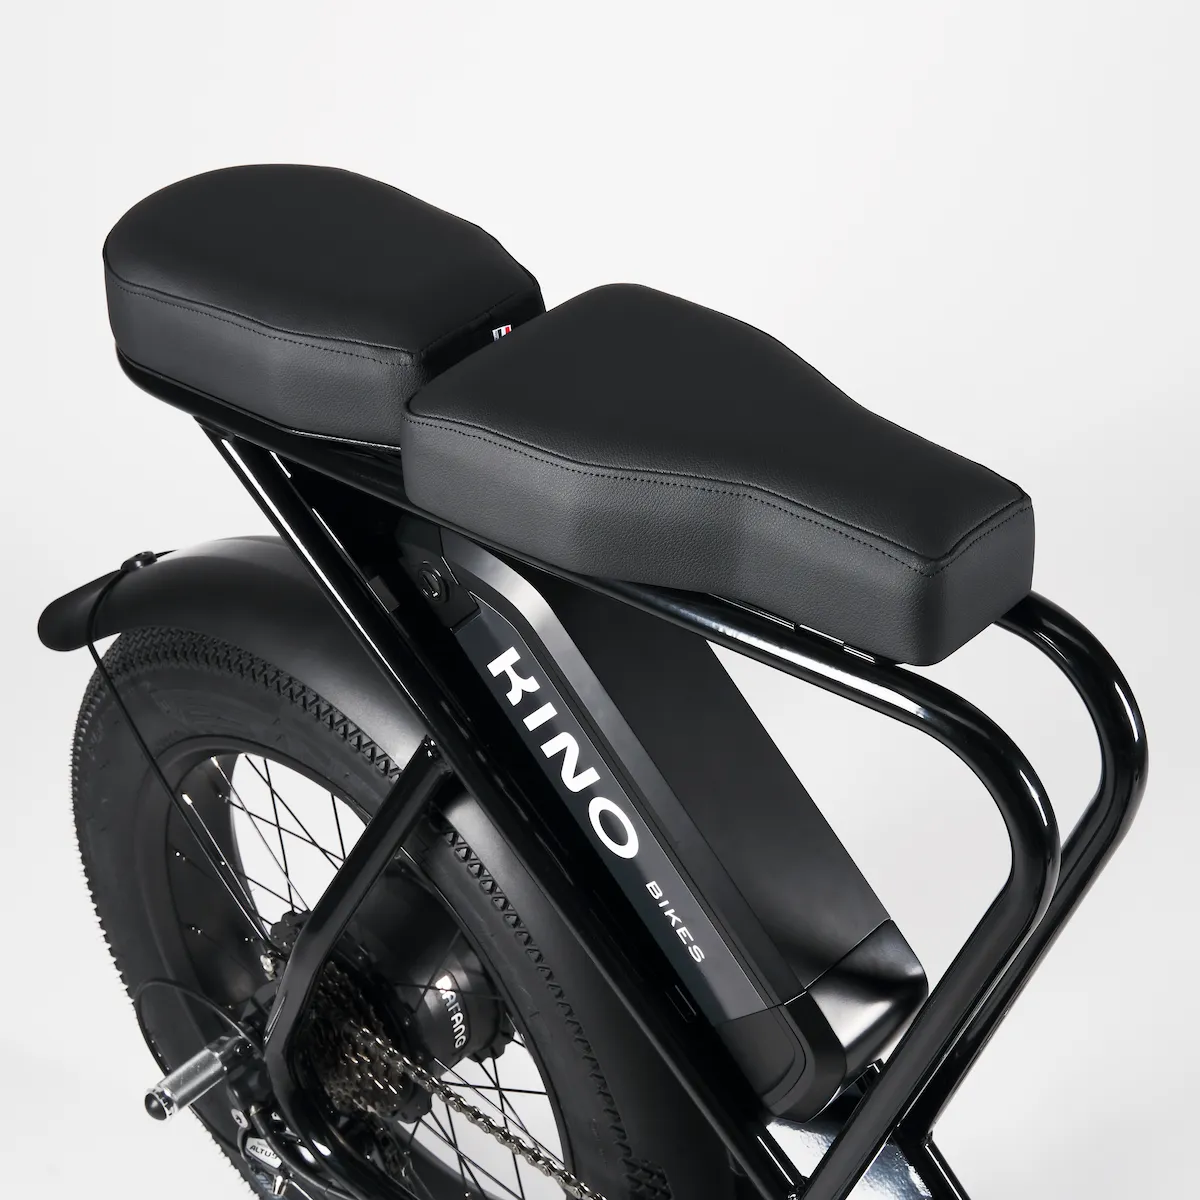 Le Bolide - vélo cargo électrique - Kino Bikes